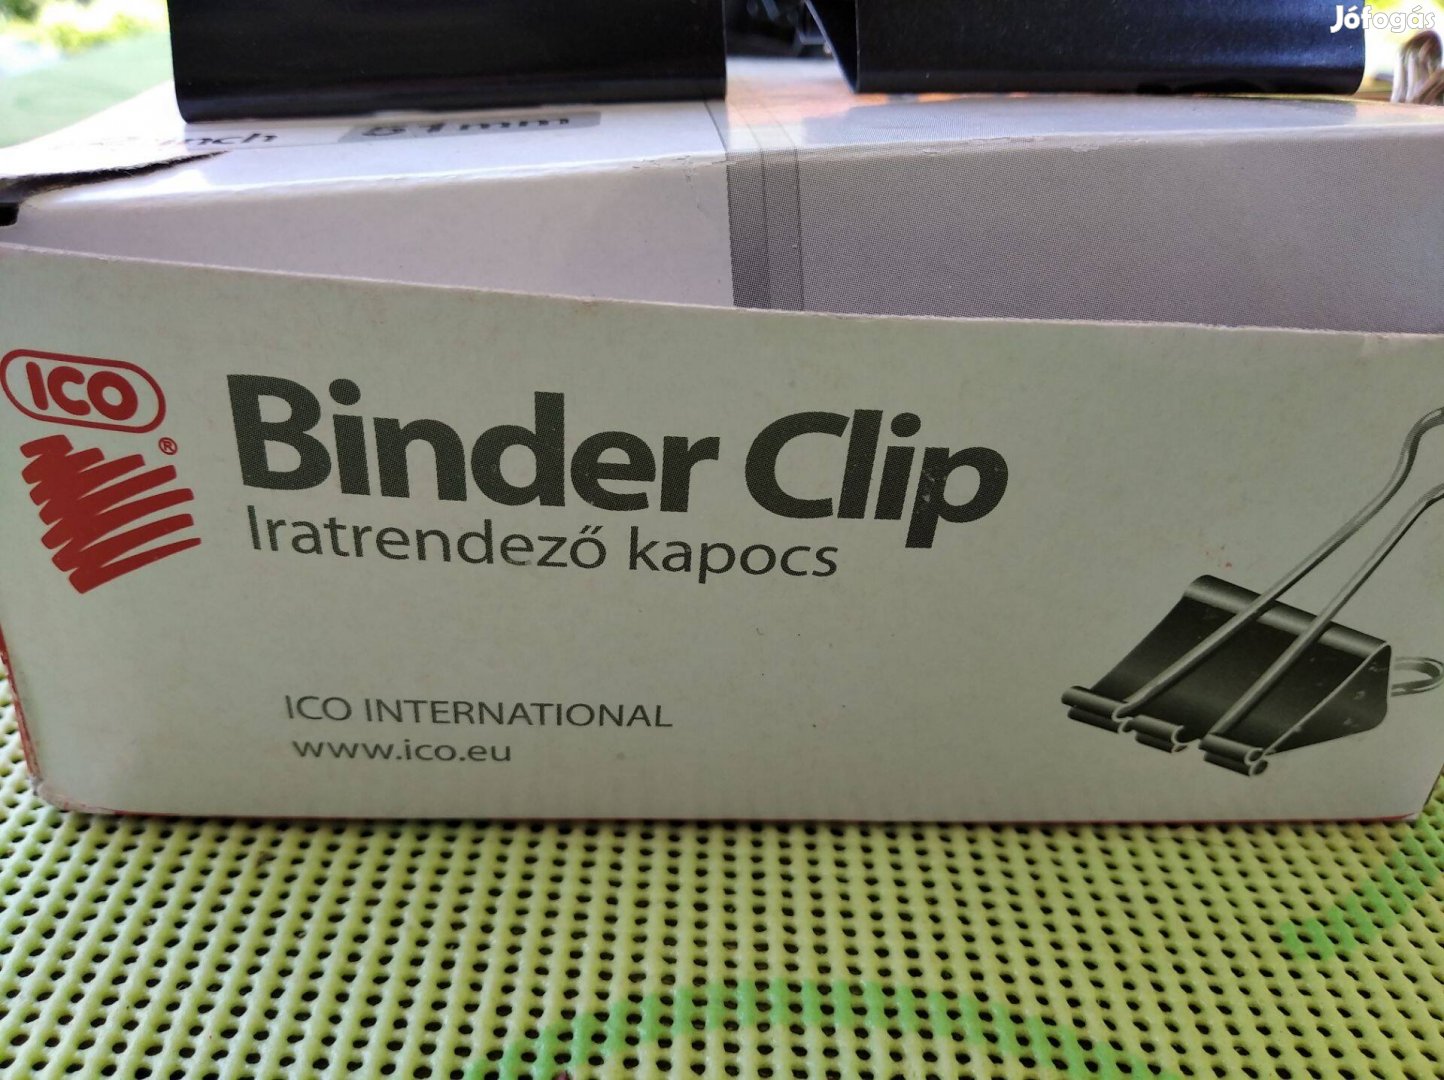 Binder Clip iratrendező kapocs eladó!